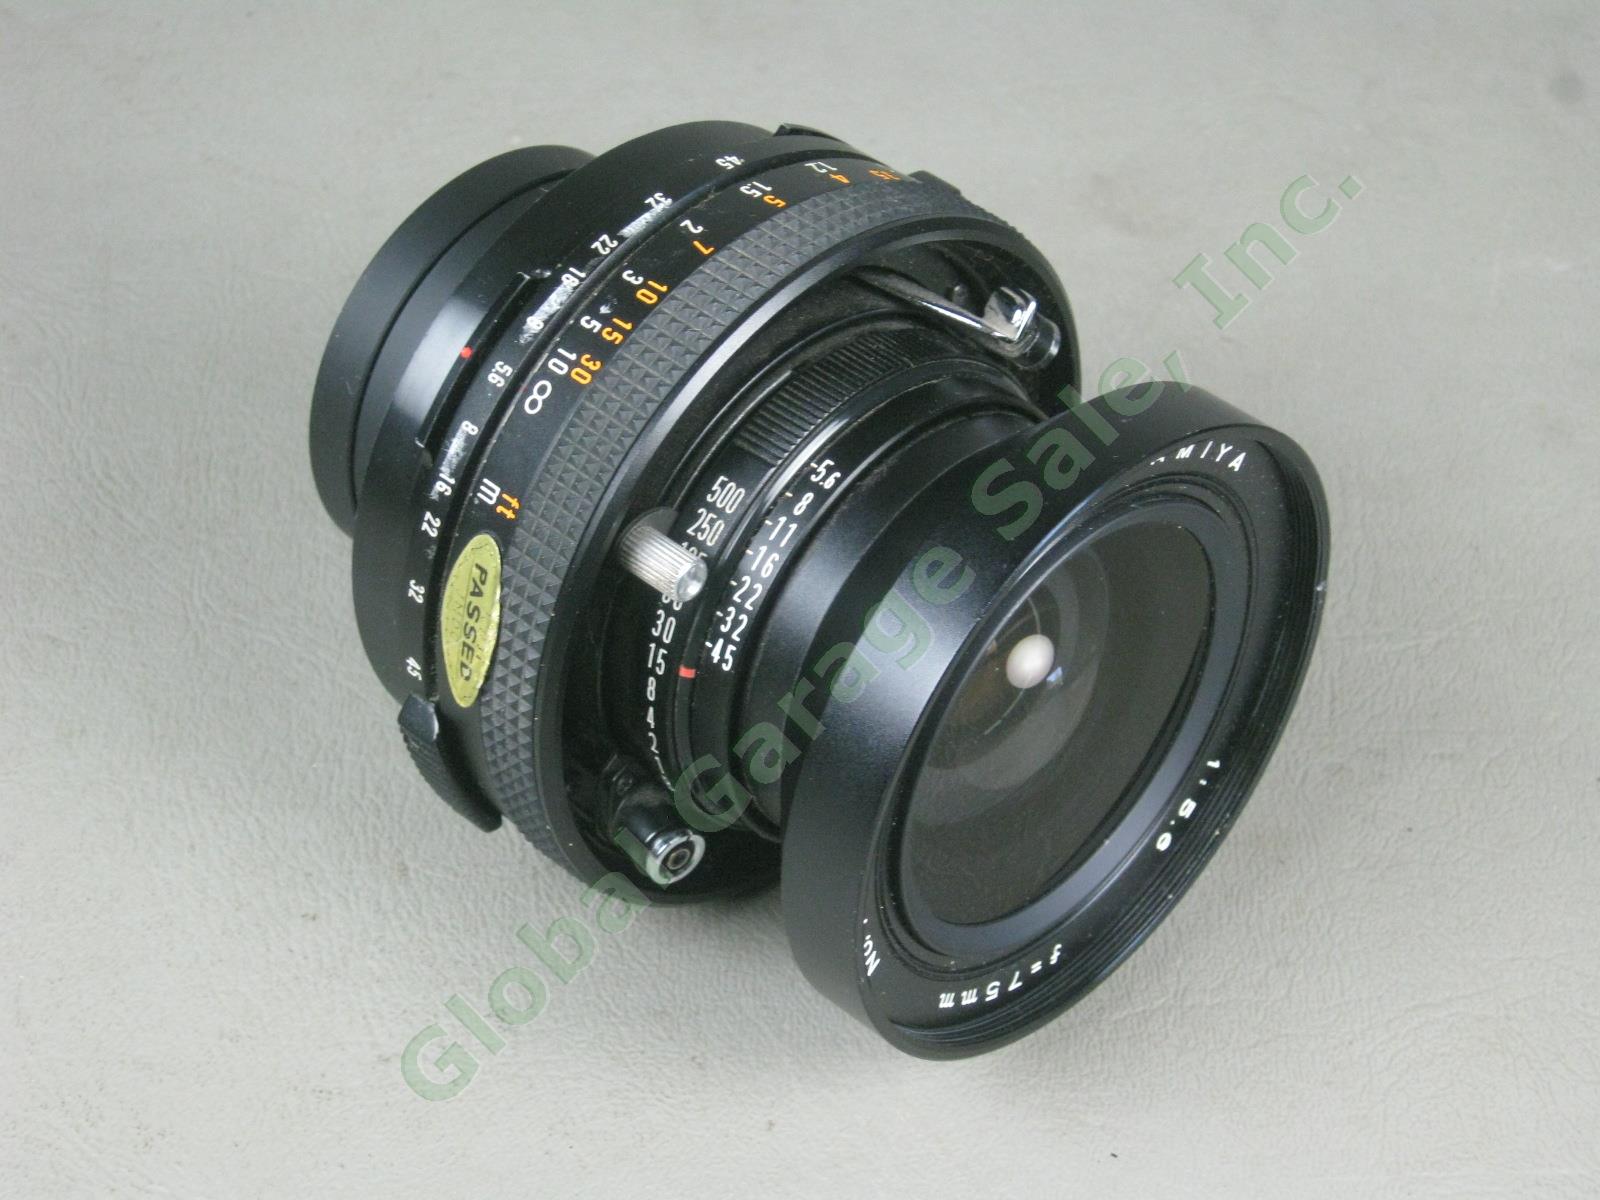 Mamiya 75mm f/5.6 1:5.6 Manual Focus Camera Lens For Polaroid 600 SE NO RESERVE!